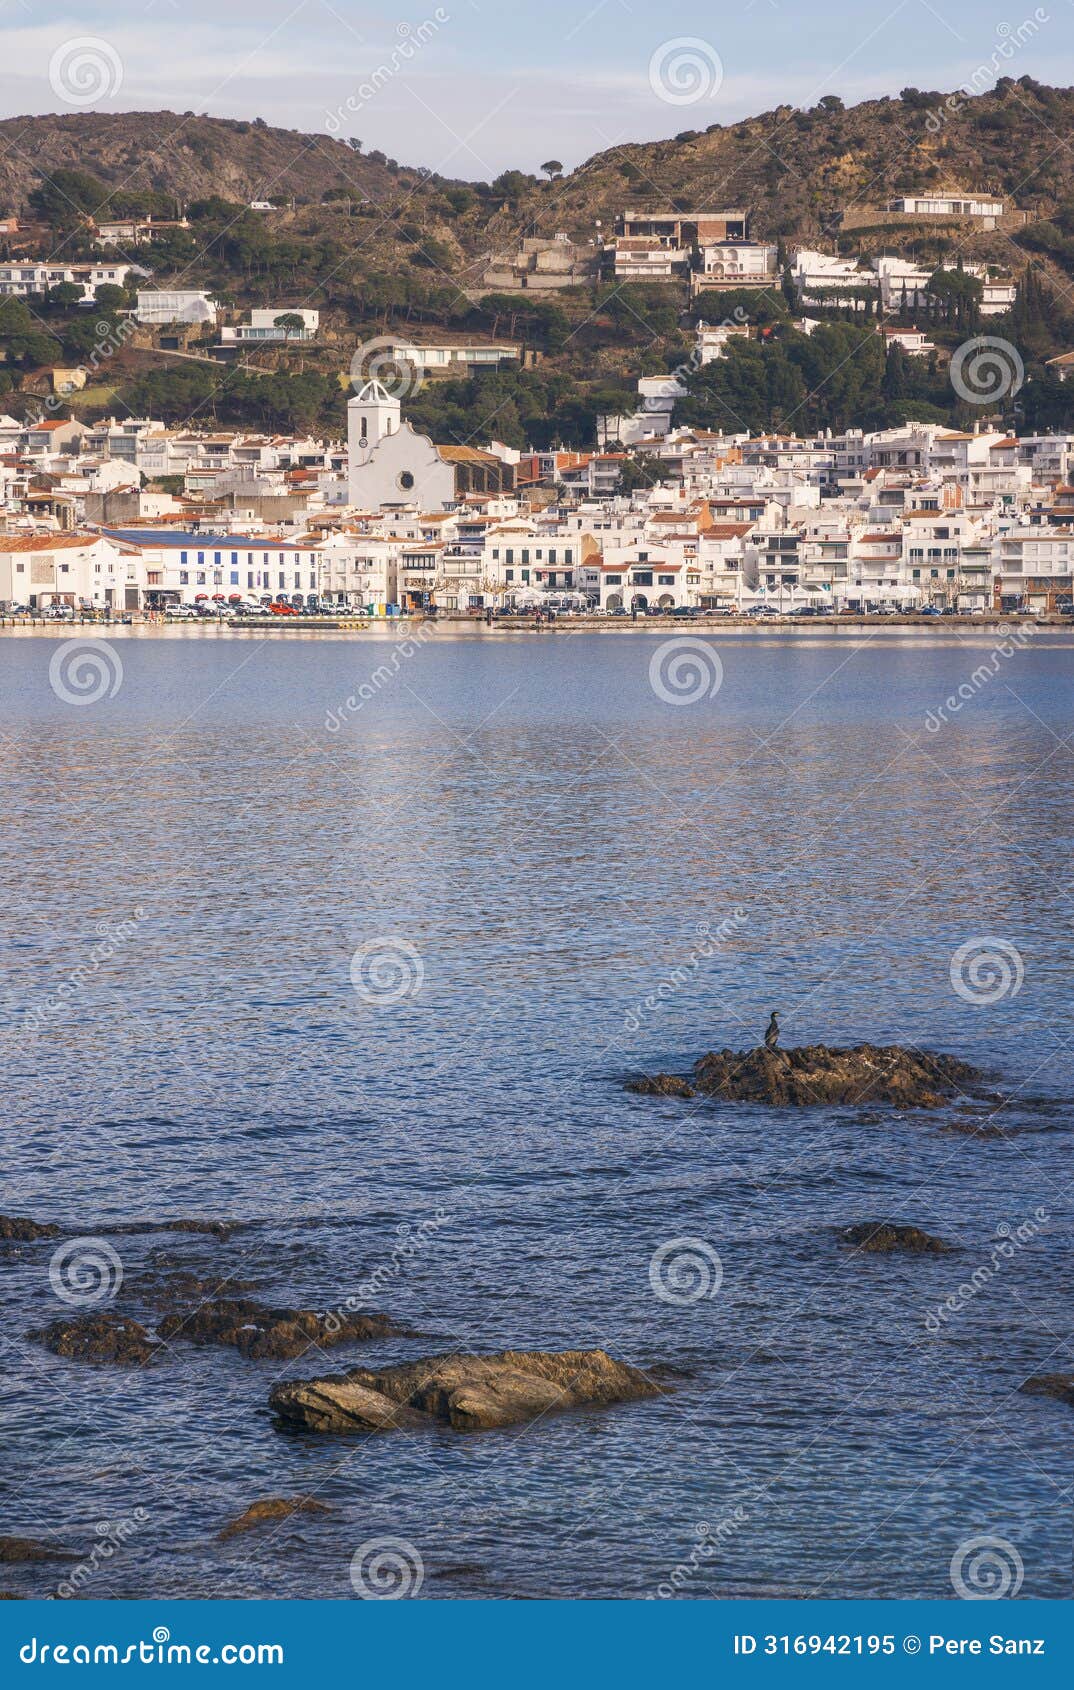 view of the beautifull village of port de la selva in catalonia